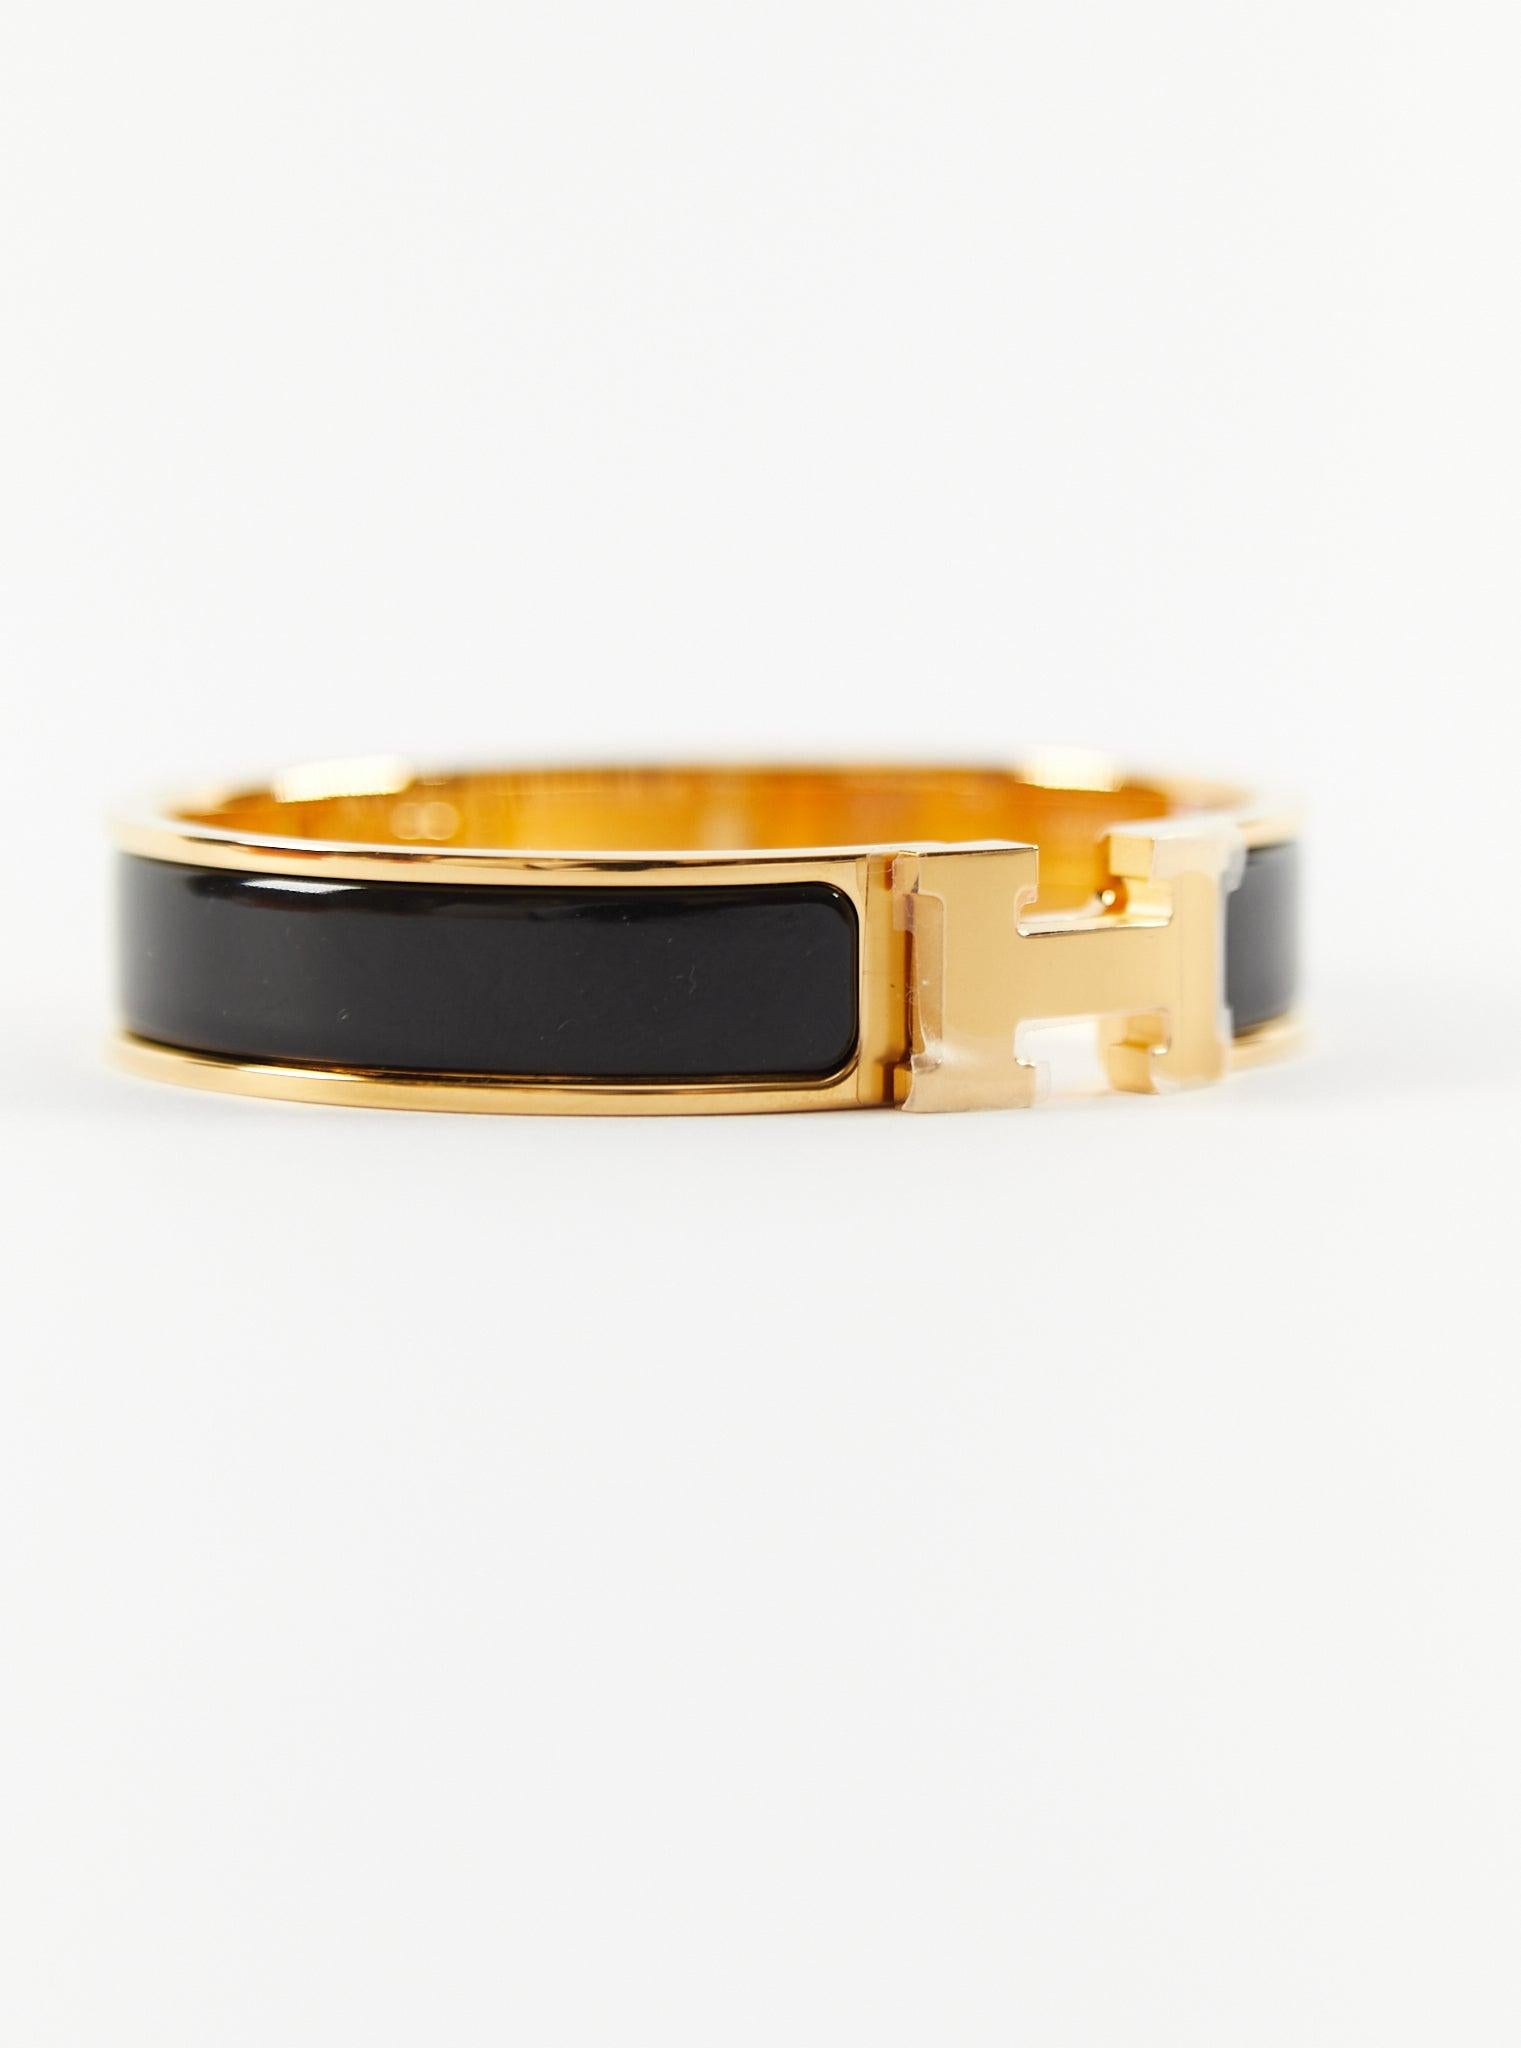 Bracelet Clic H PM d'Hermès en noir et or

Taille du poignet : 16.8 cm  Largeur : 12 mm

Fabriqué en France